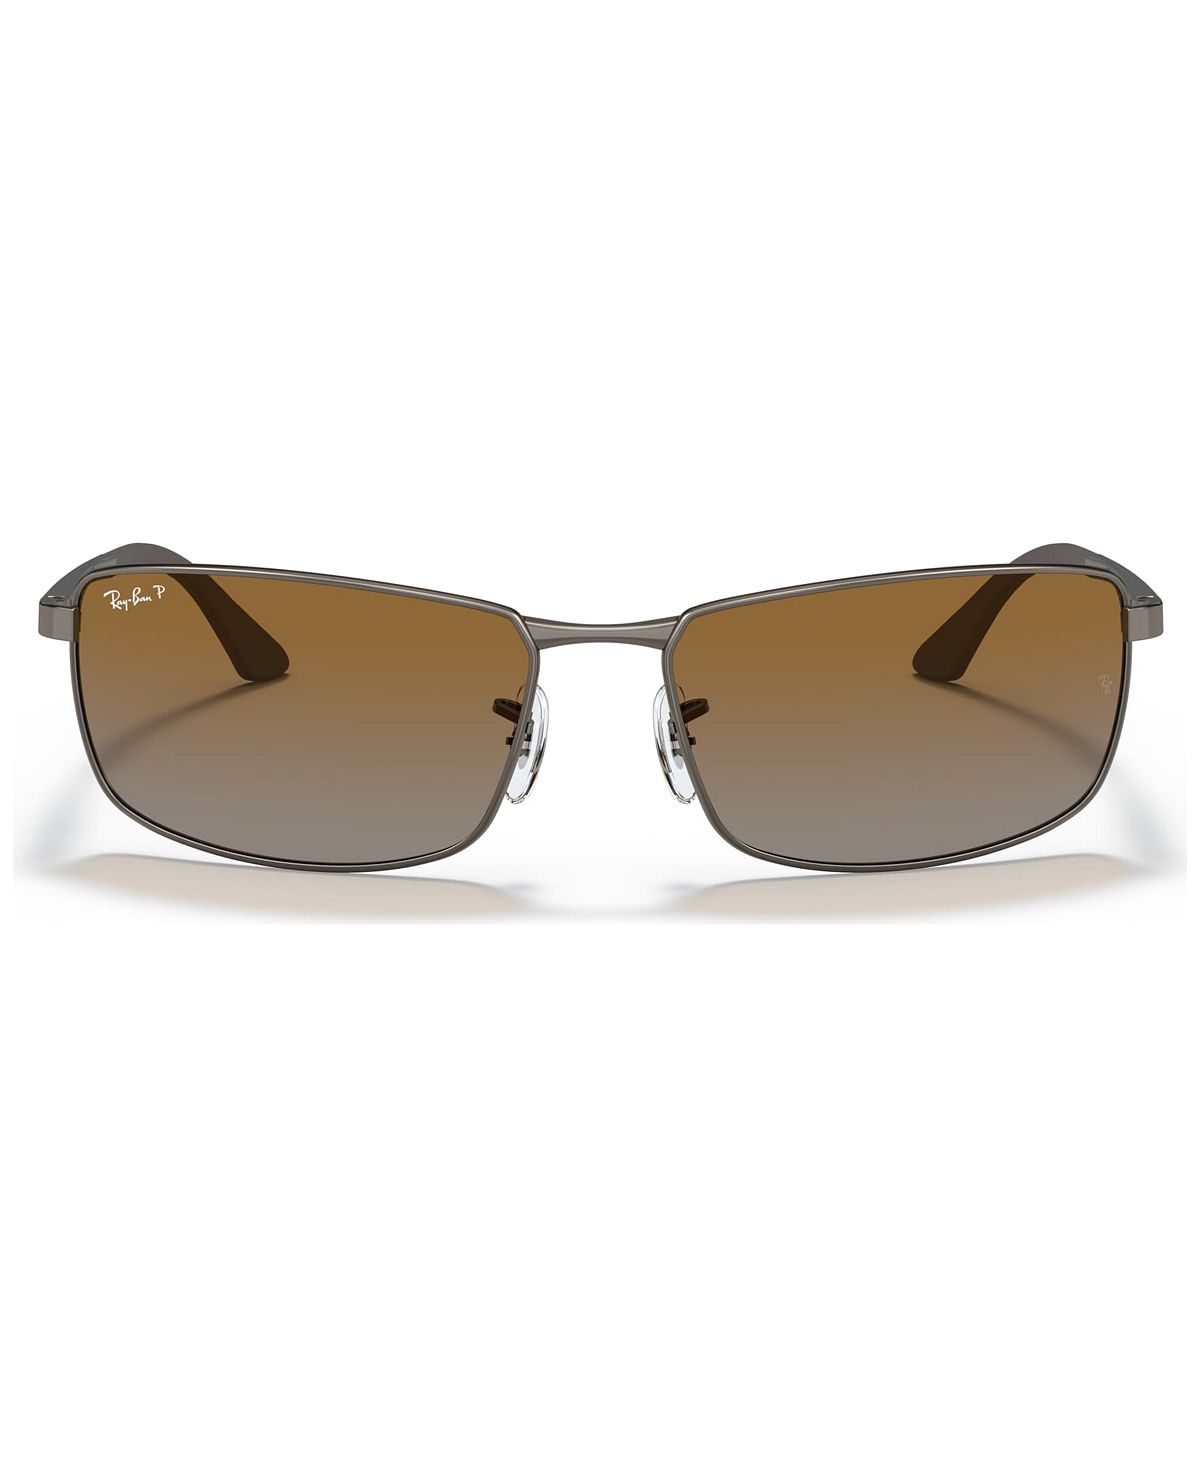 Поляризационные солнцезащитные очки, RB3498 Ray-Ban